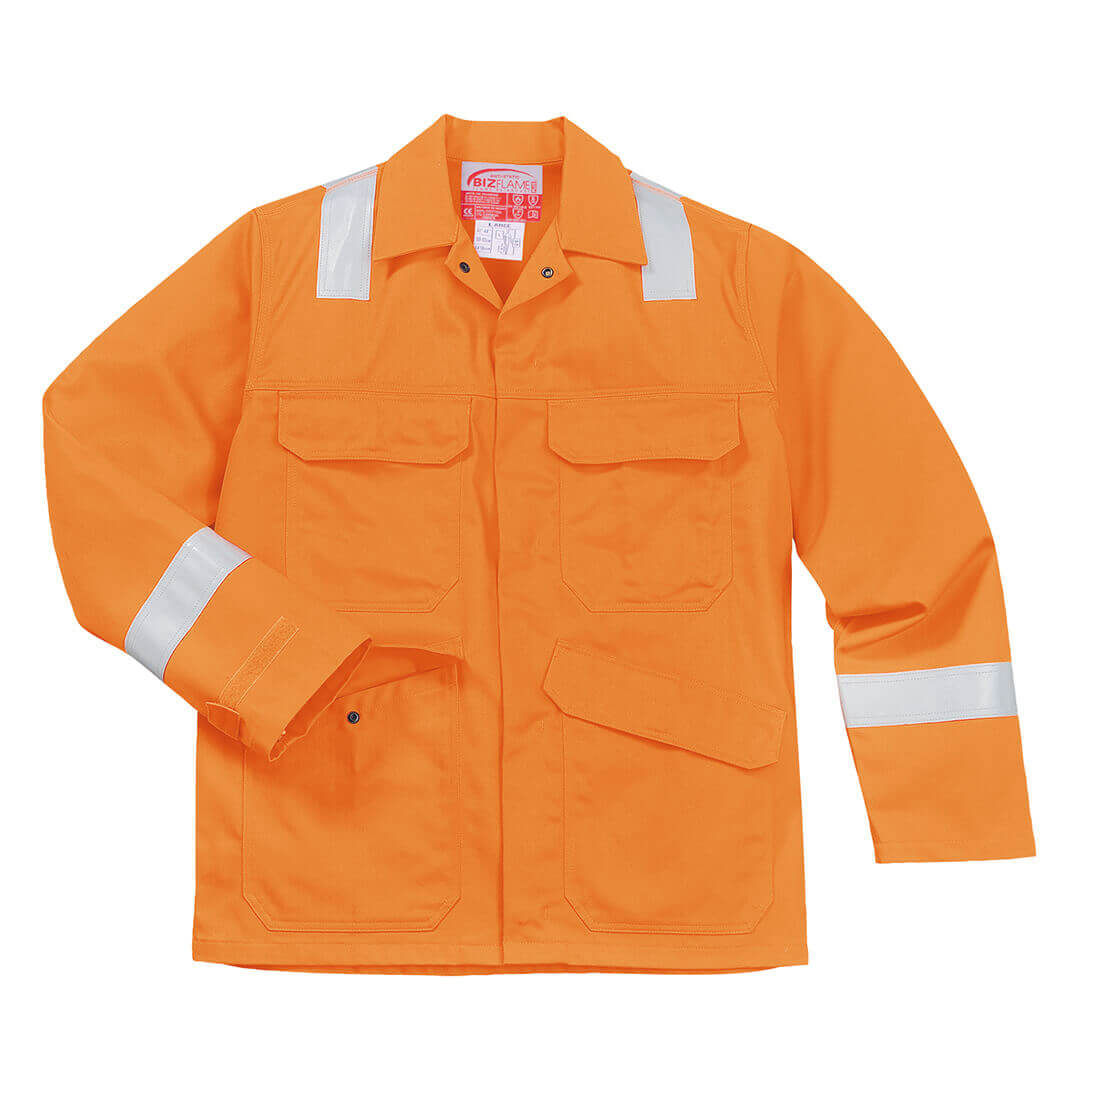 Image of Biz Flame Mens Flame Resistant Jacket Orange L